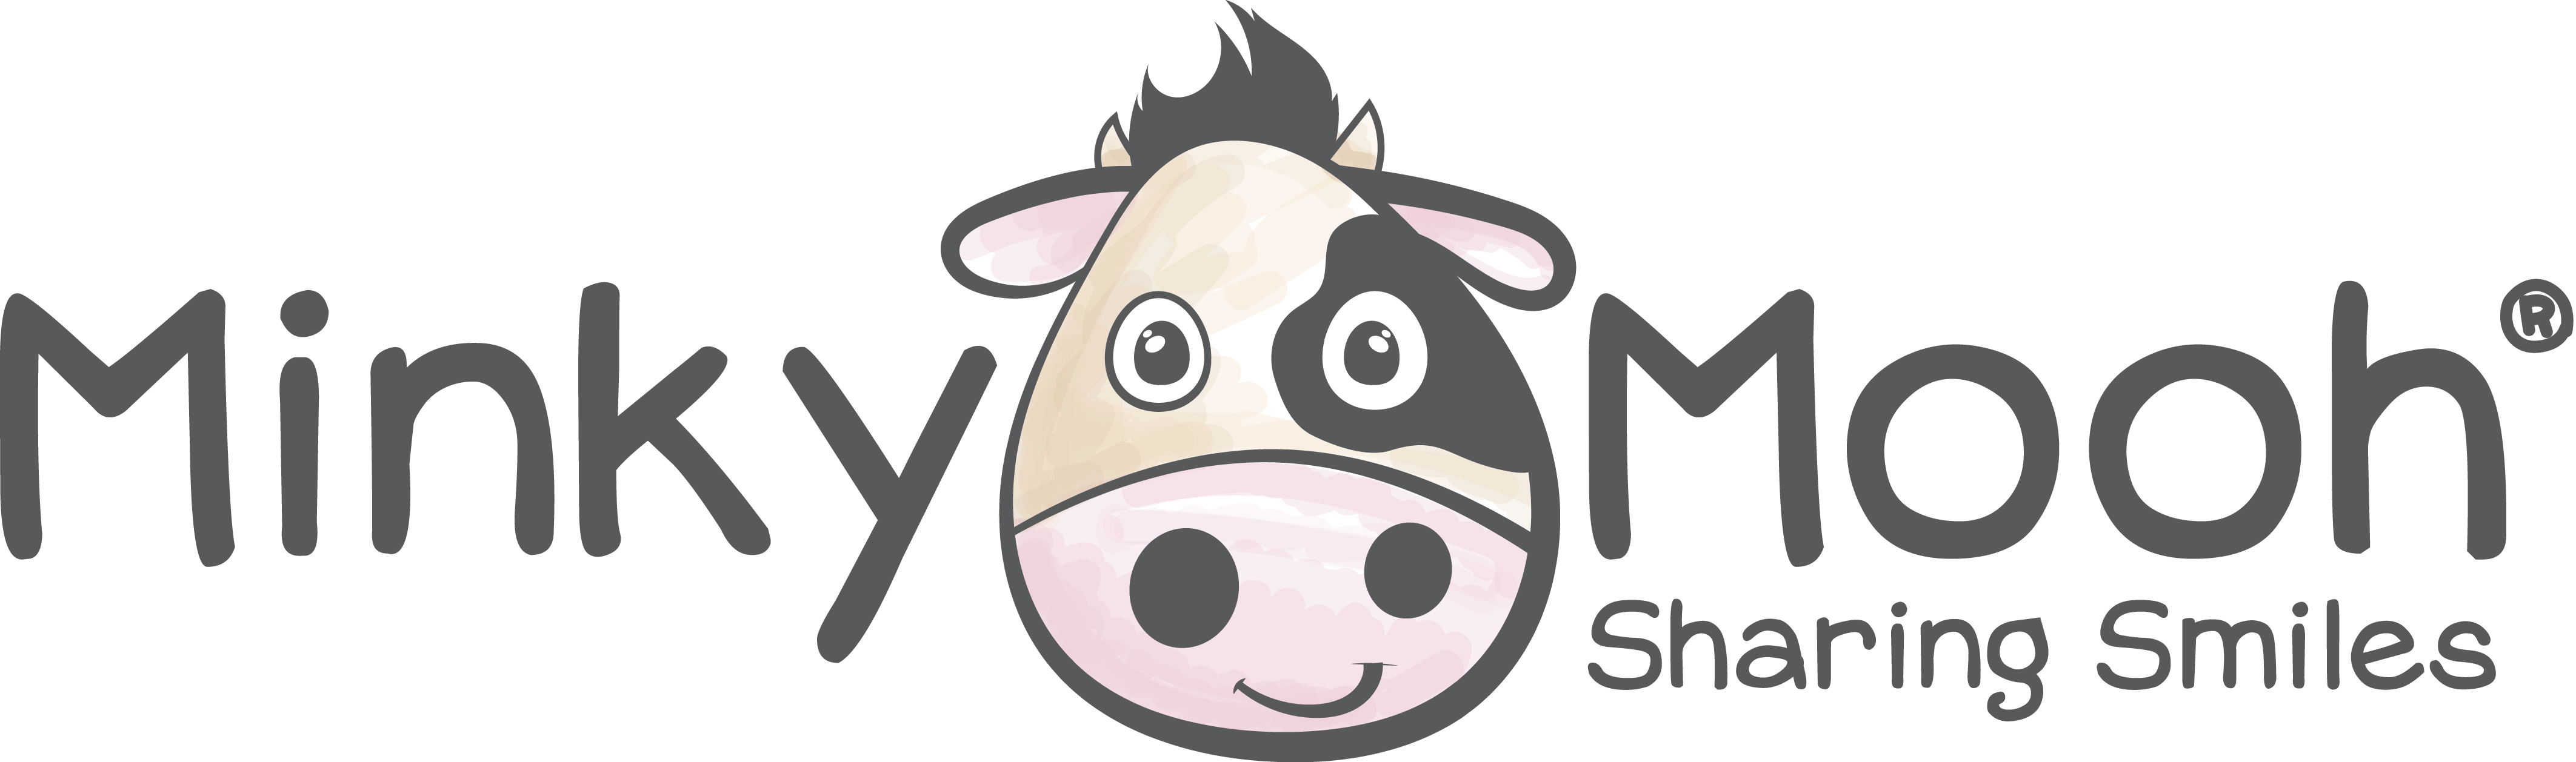 Minky Mooh Sharing Smiles Logo